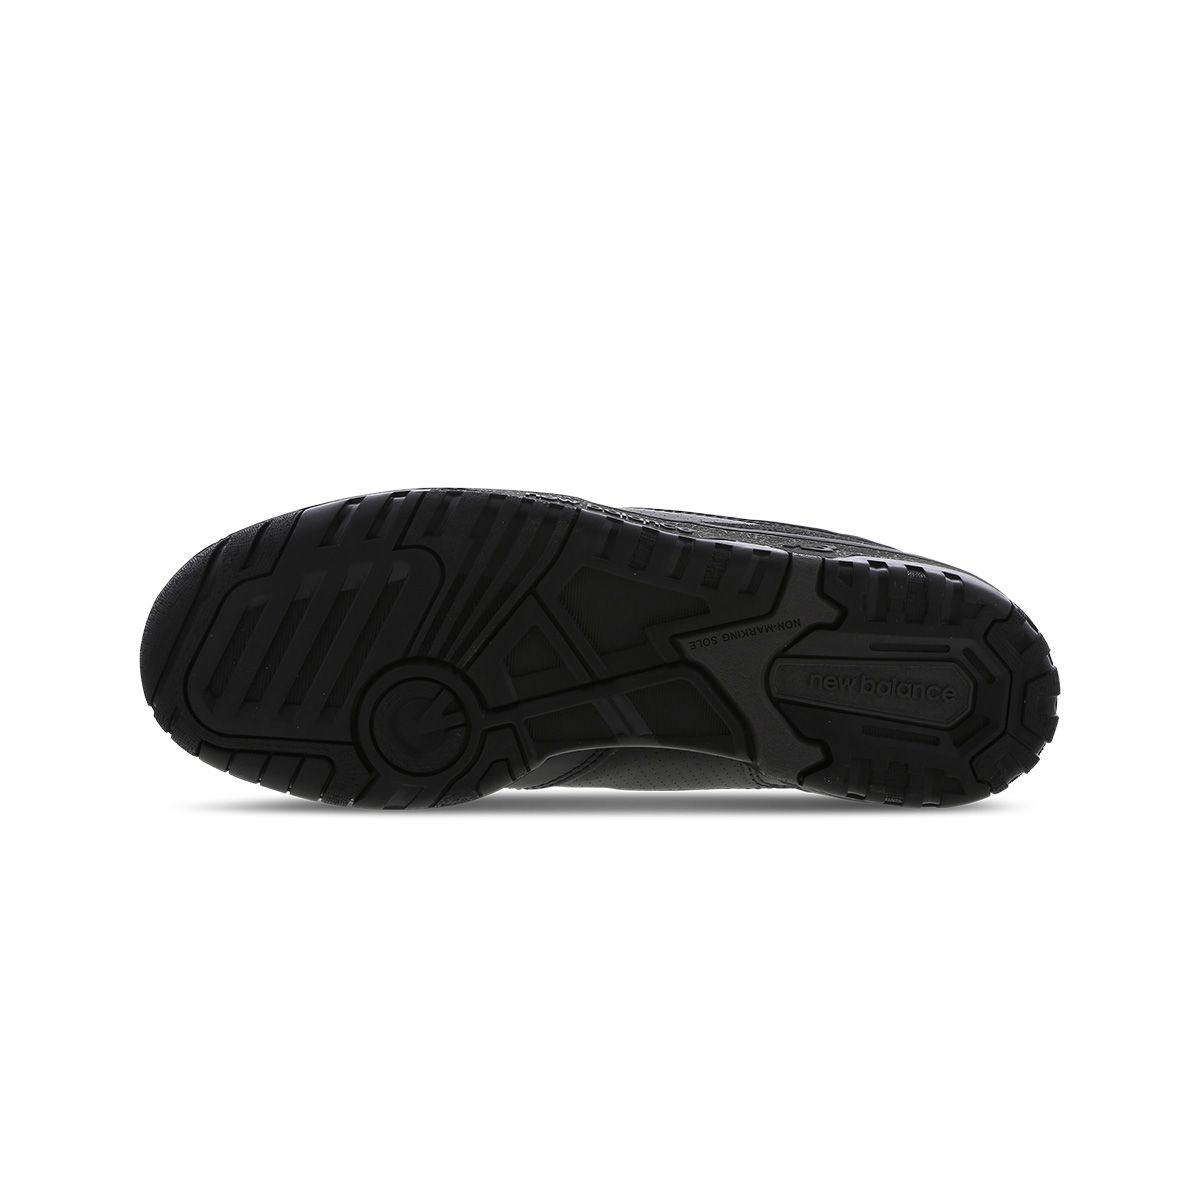 Total Black 550 Sneakers